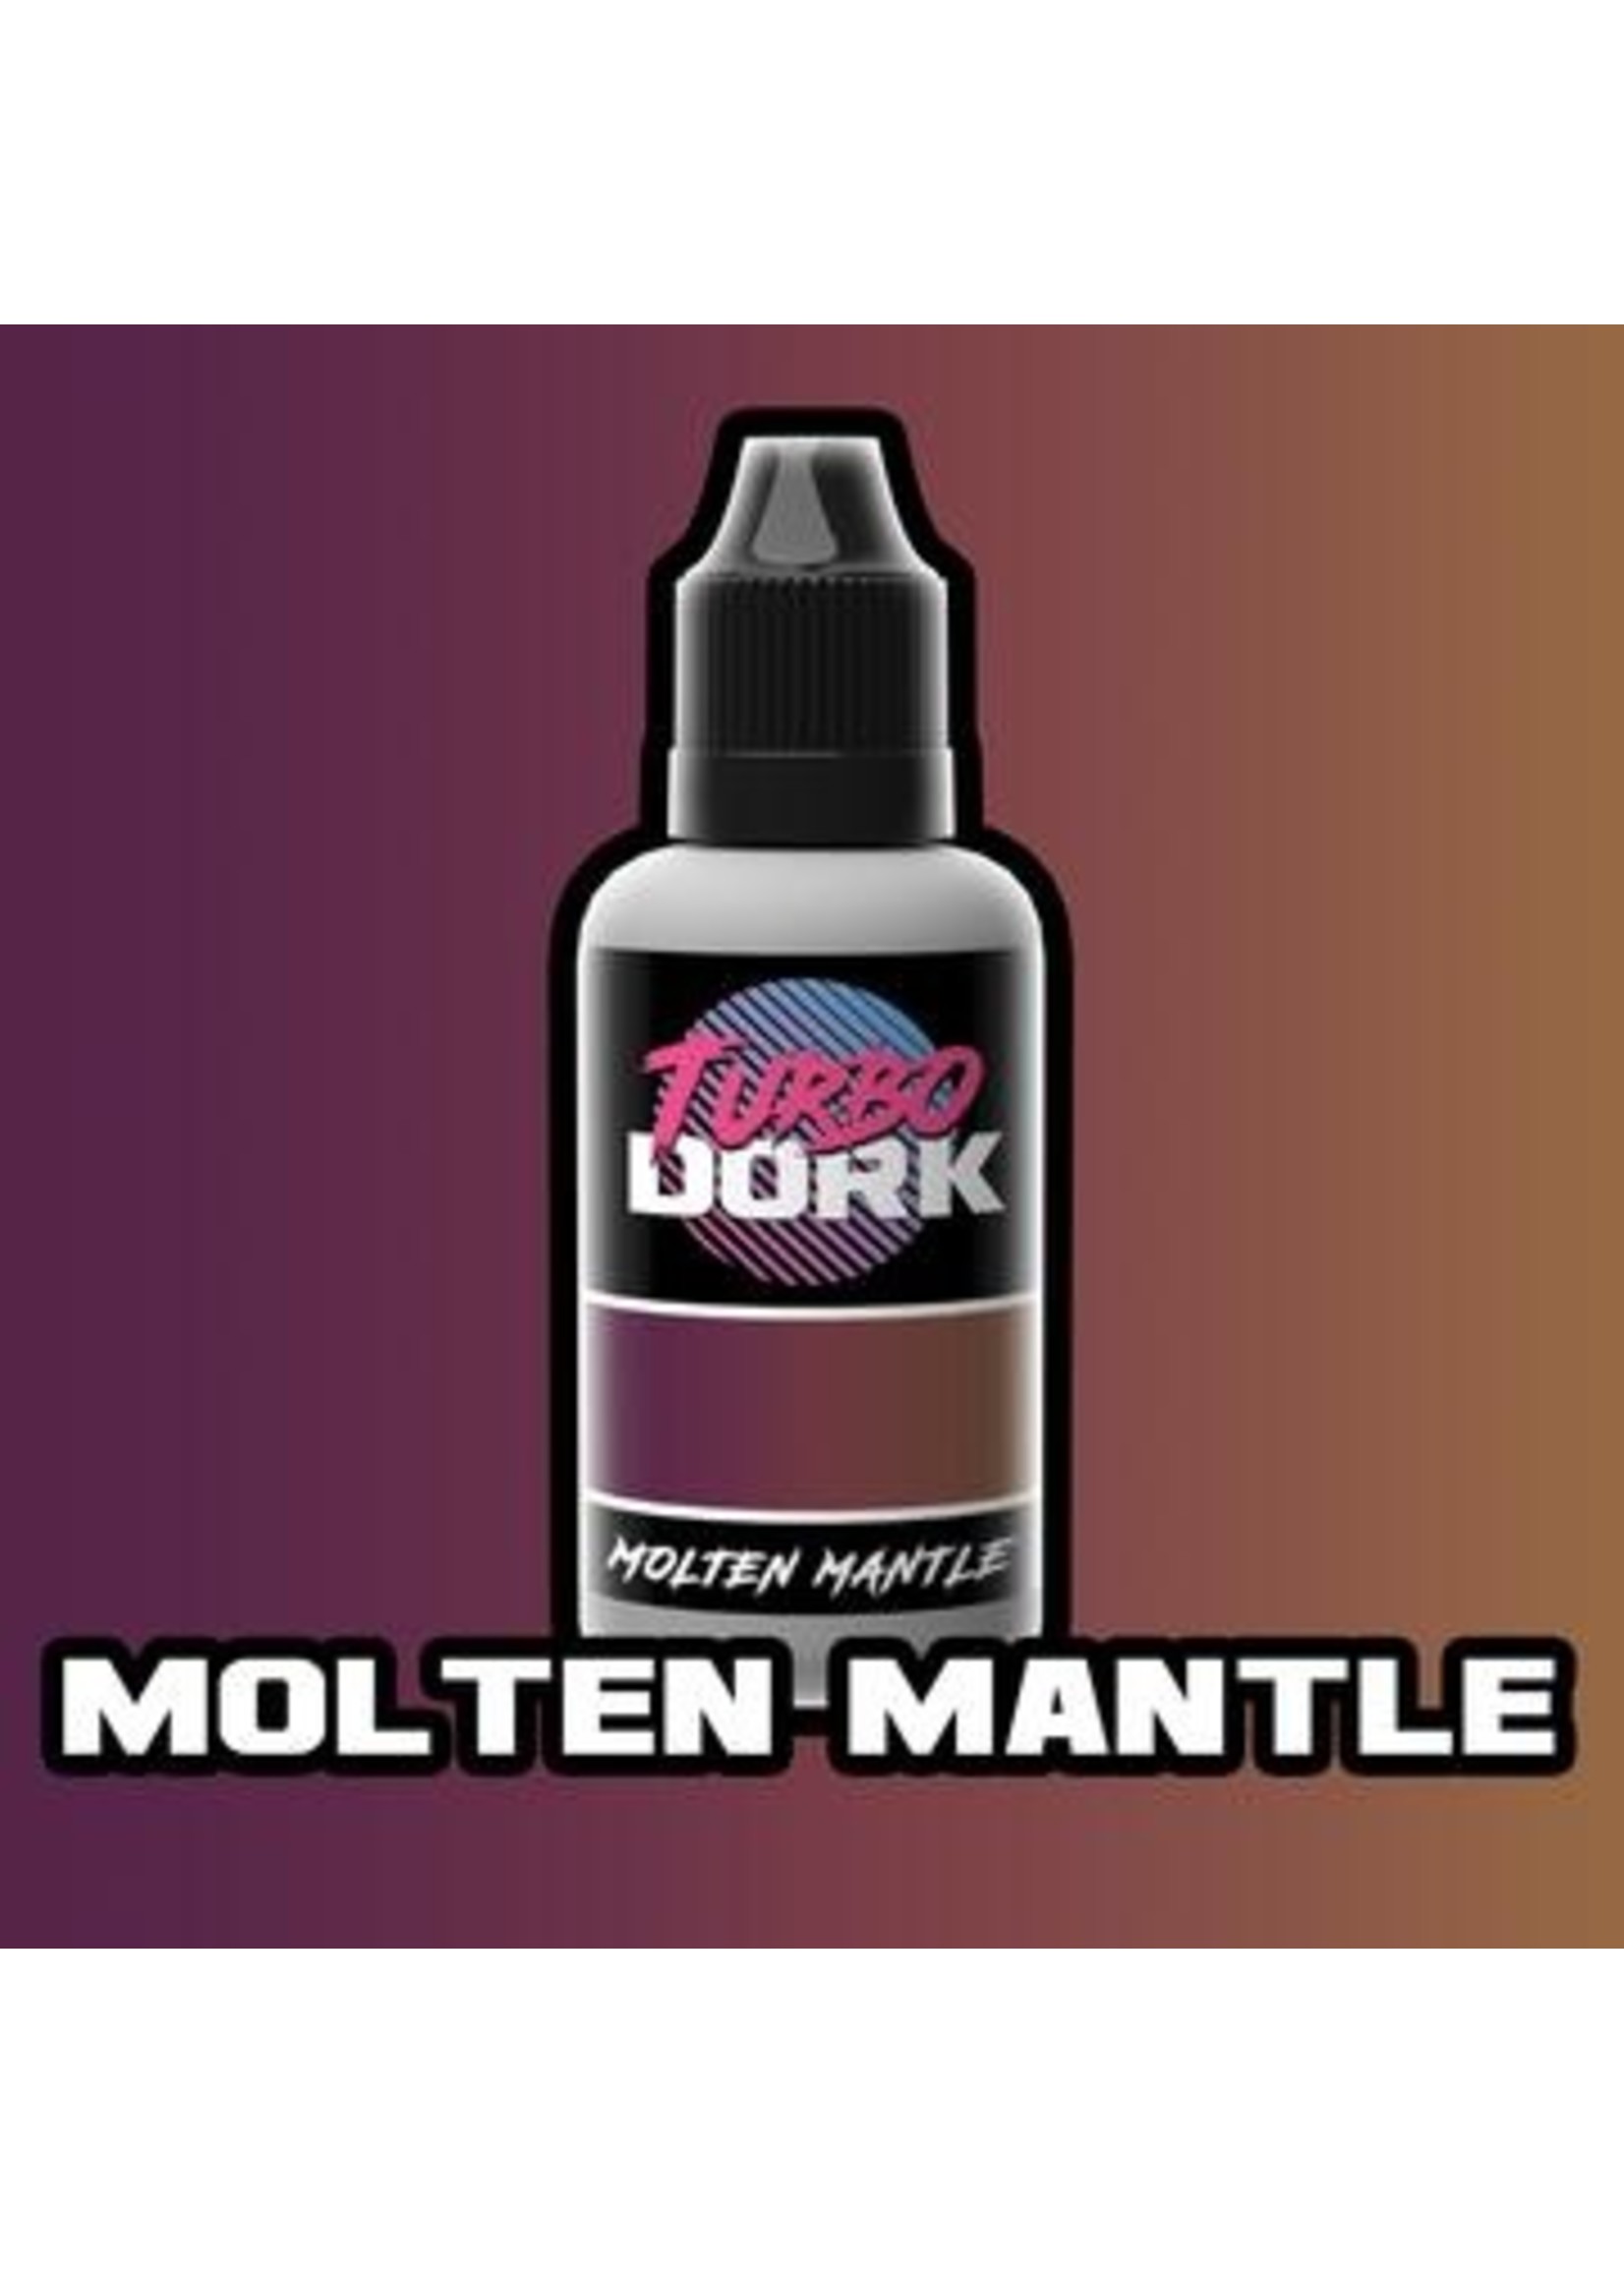 Turbo Dork Molten Mantle Turboshift Acrylic Paint - 20ml Bottle